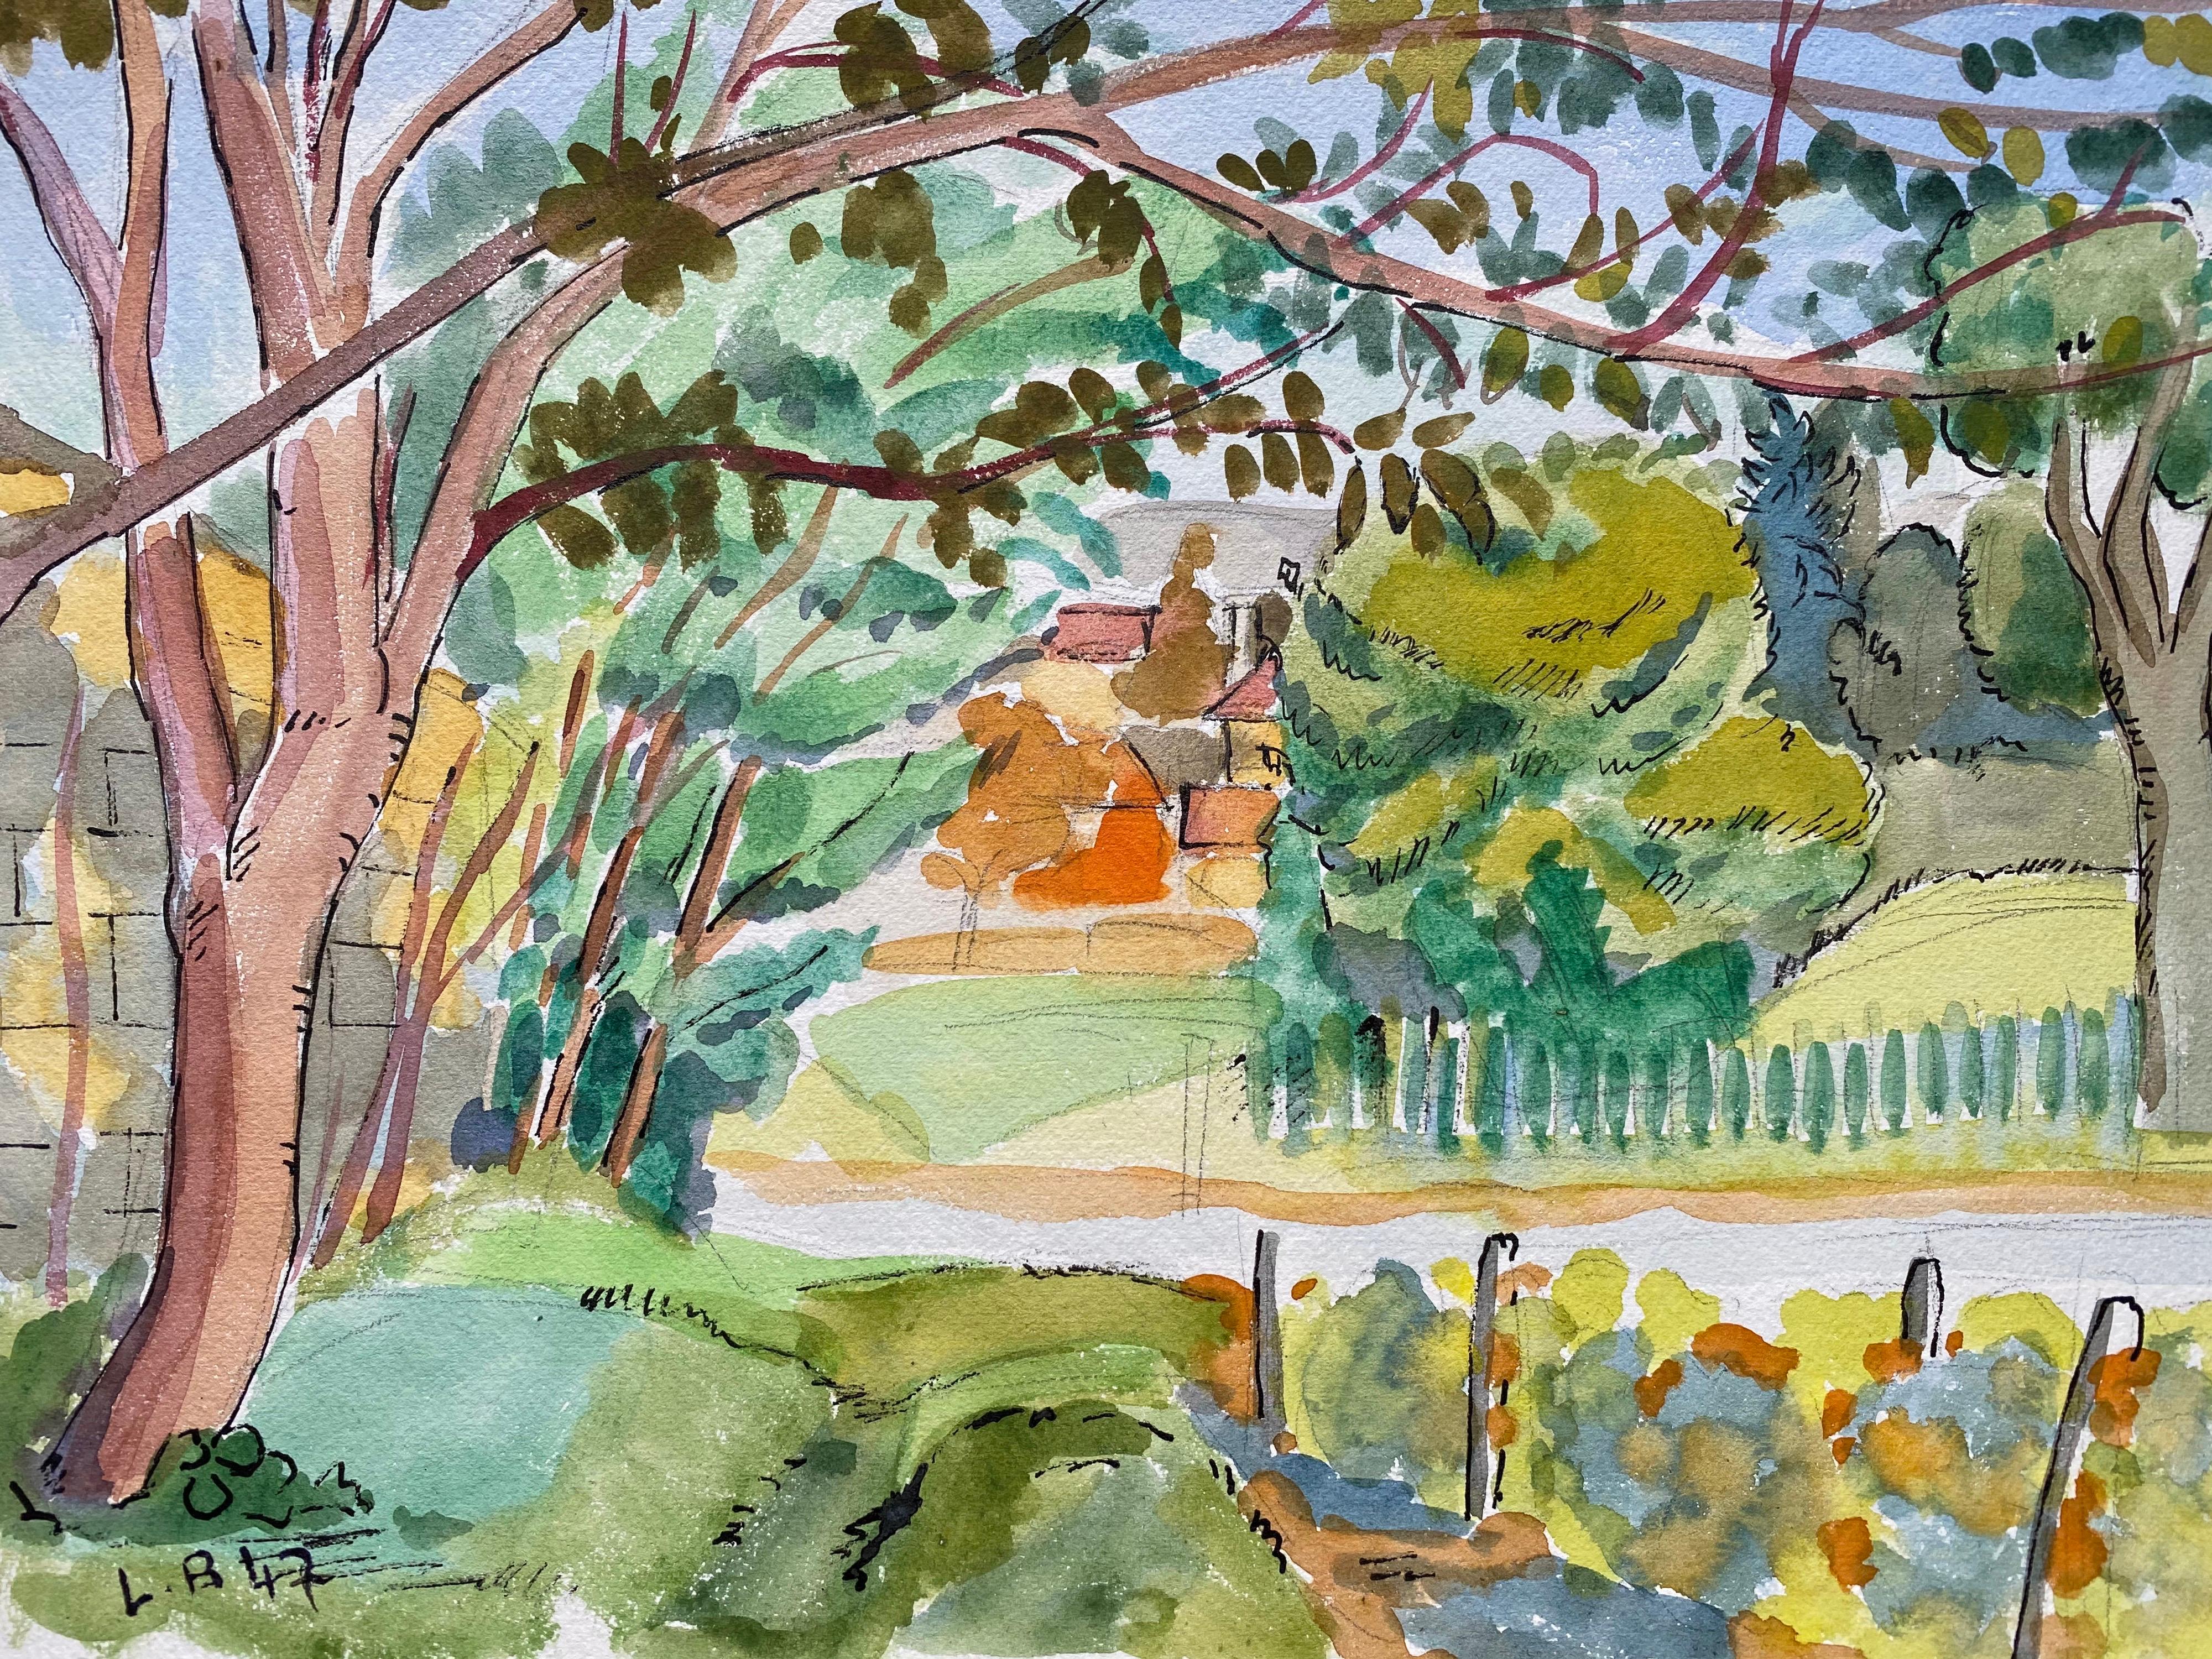 Louis Bellon Landscape Art - 1940's Provence France Painting Green Landscape - Post Impressionist artist